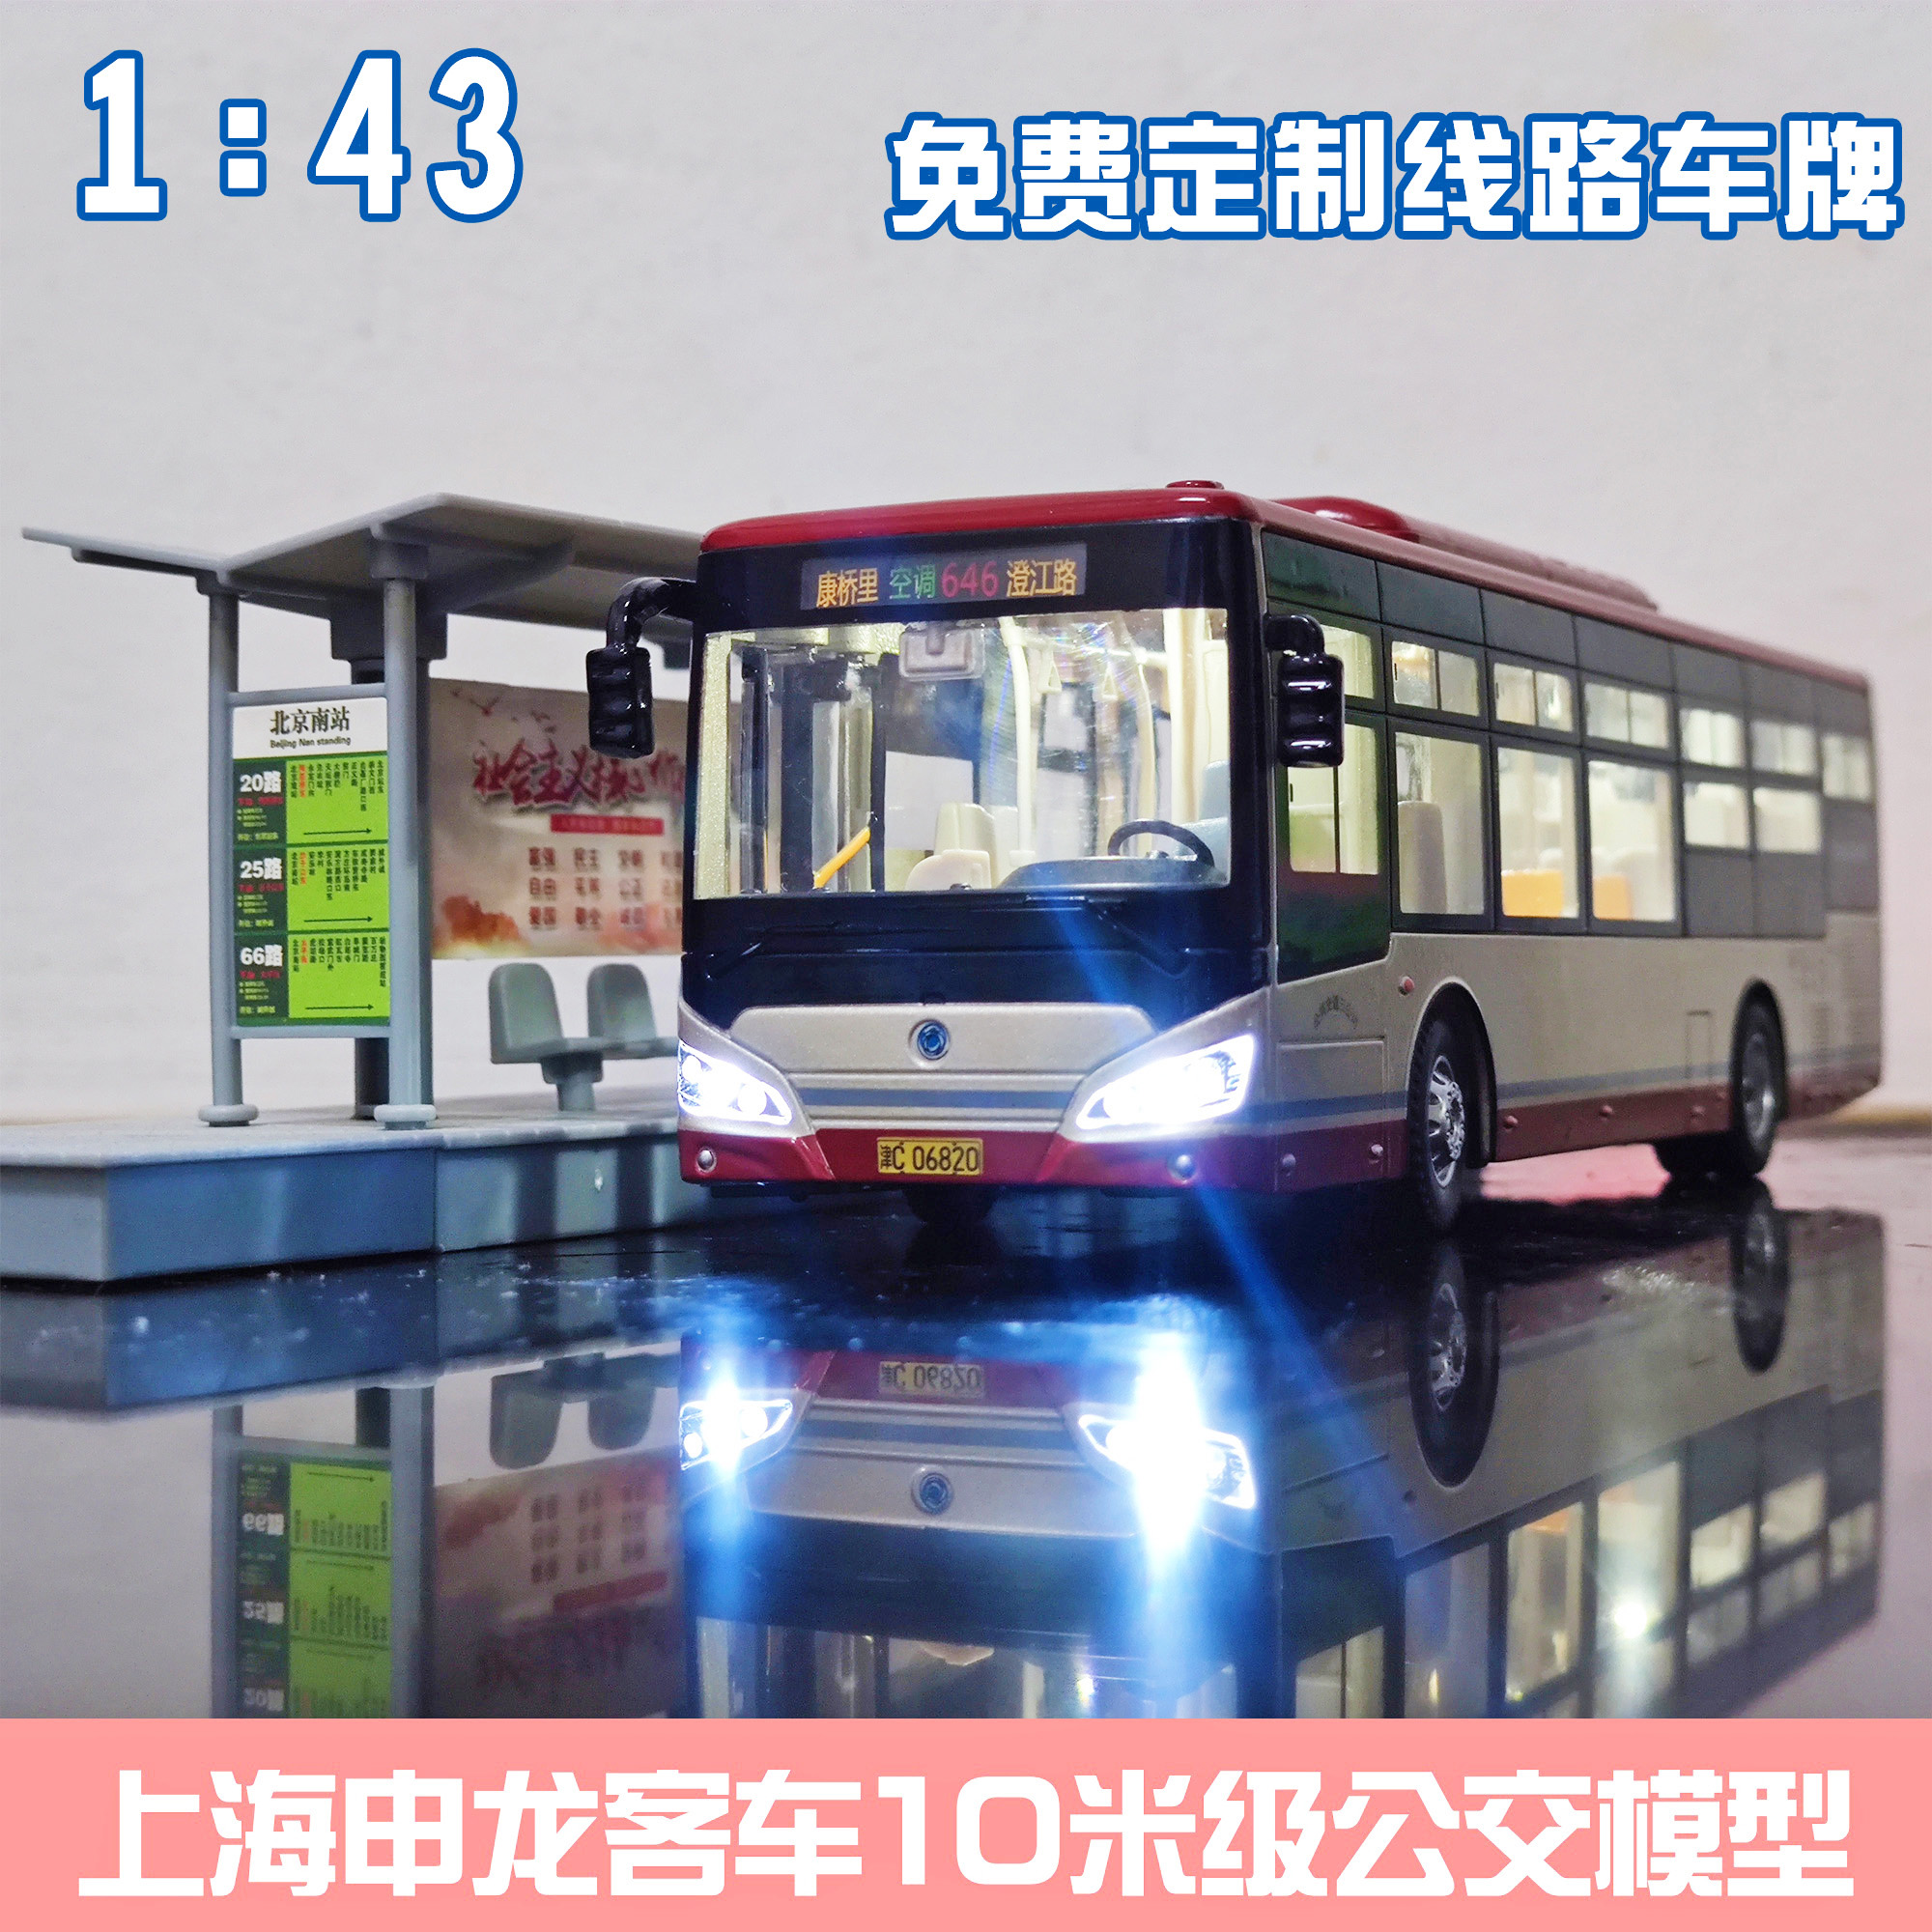 1:43 天津公交模型玩具车 上海申龙客车灯光合金巴士大号定制正版